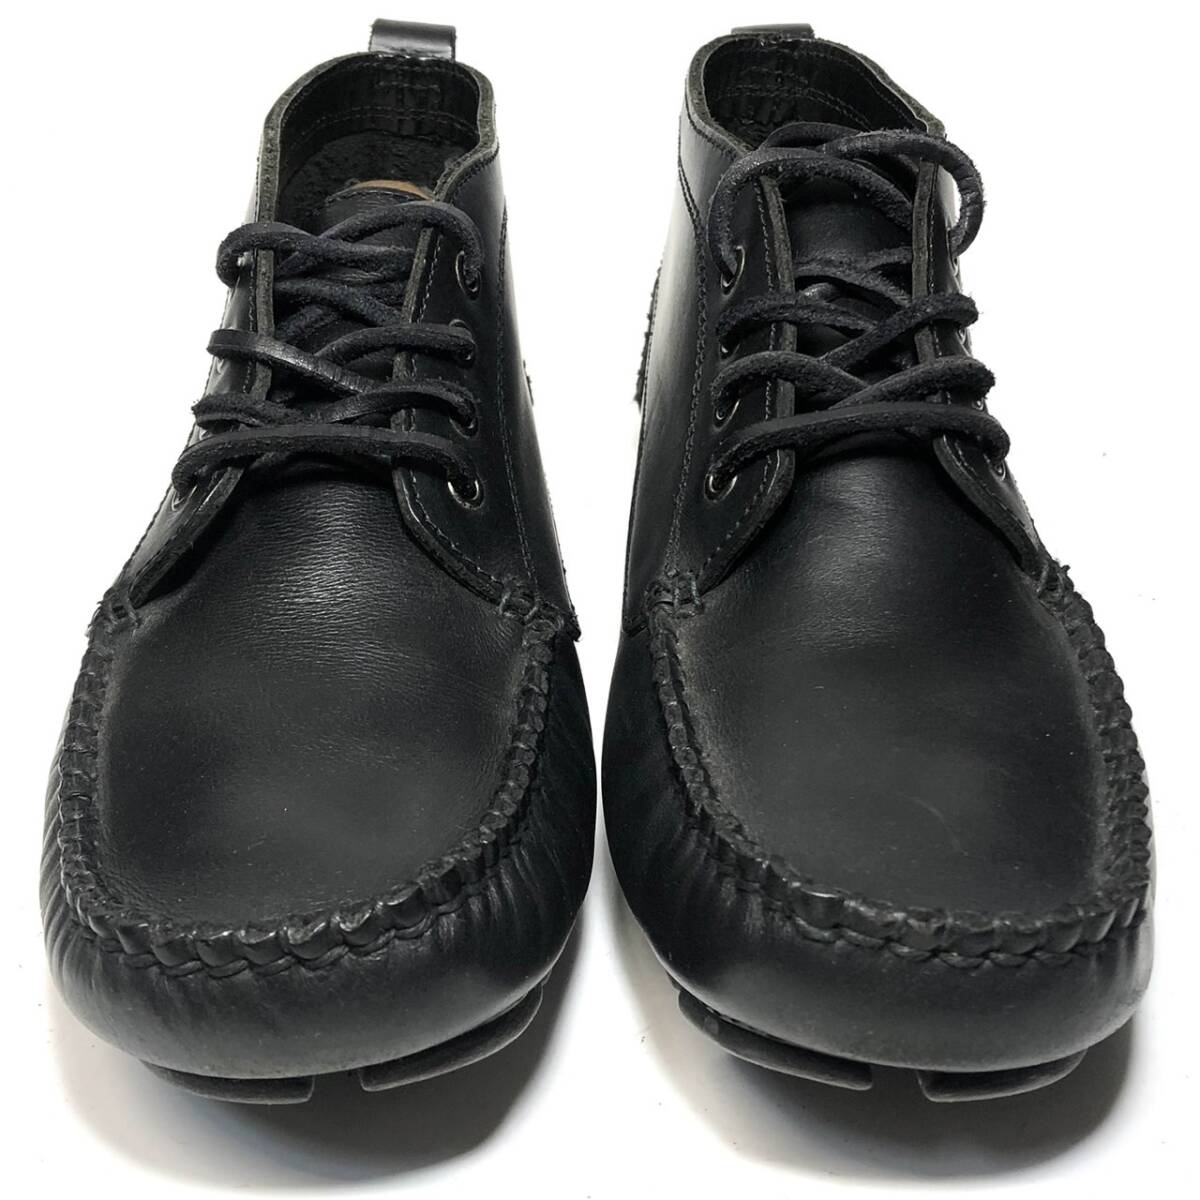  контрольный BC016■HAWKINS SPORT 40  около 25cm-25.5cm  черный   черный   дека  обувь    hawkins   кожаная обувь   кожа   обувь    натуральная кожа   повседневный   подержанный товар  *E7